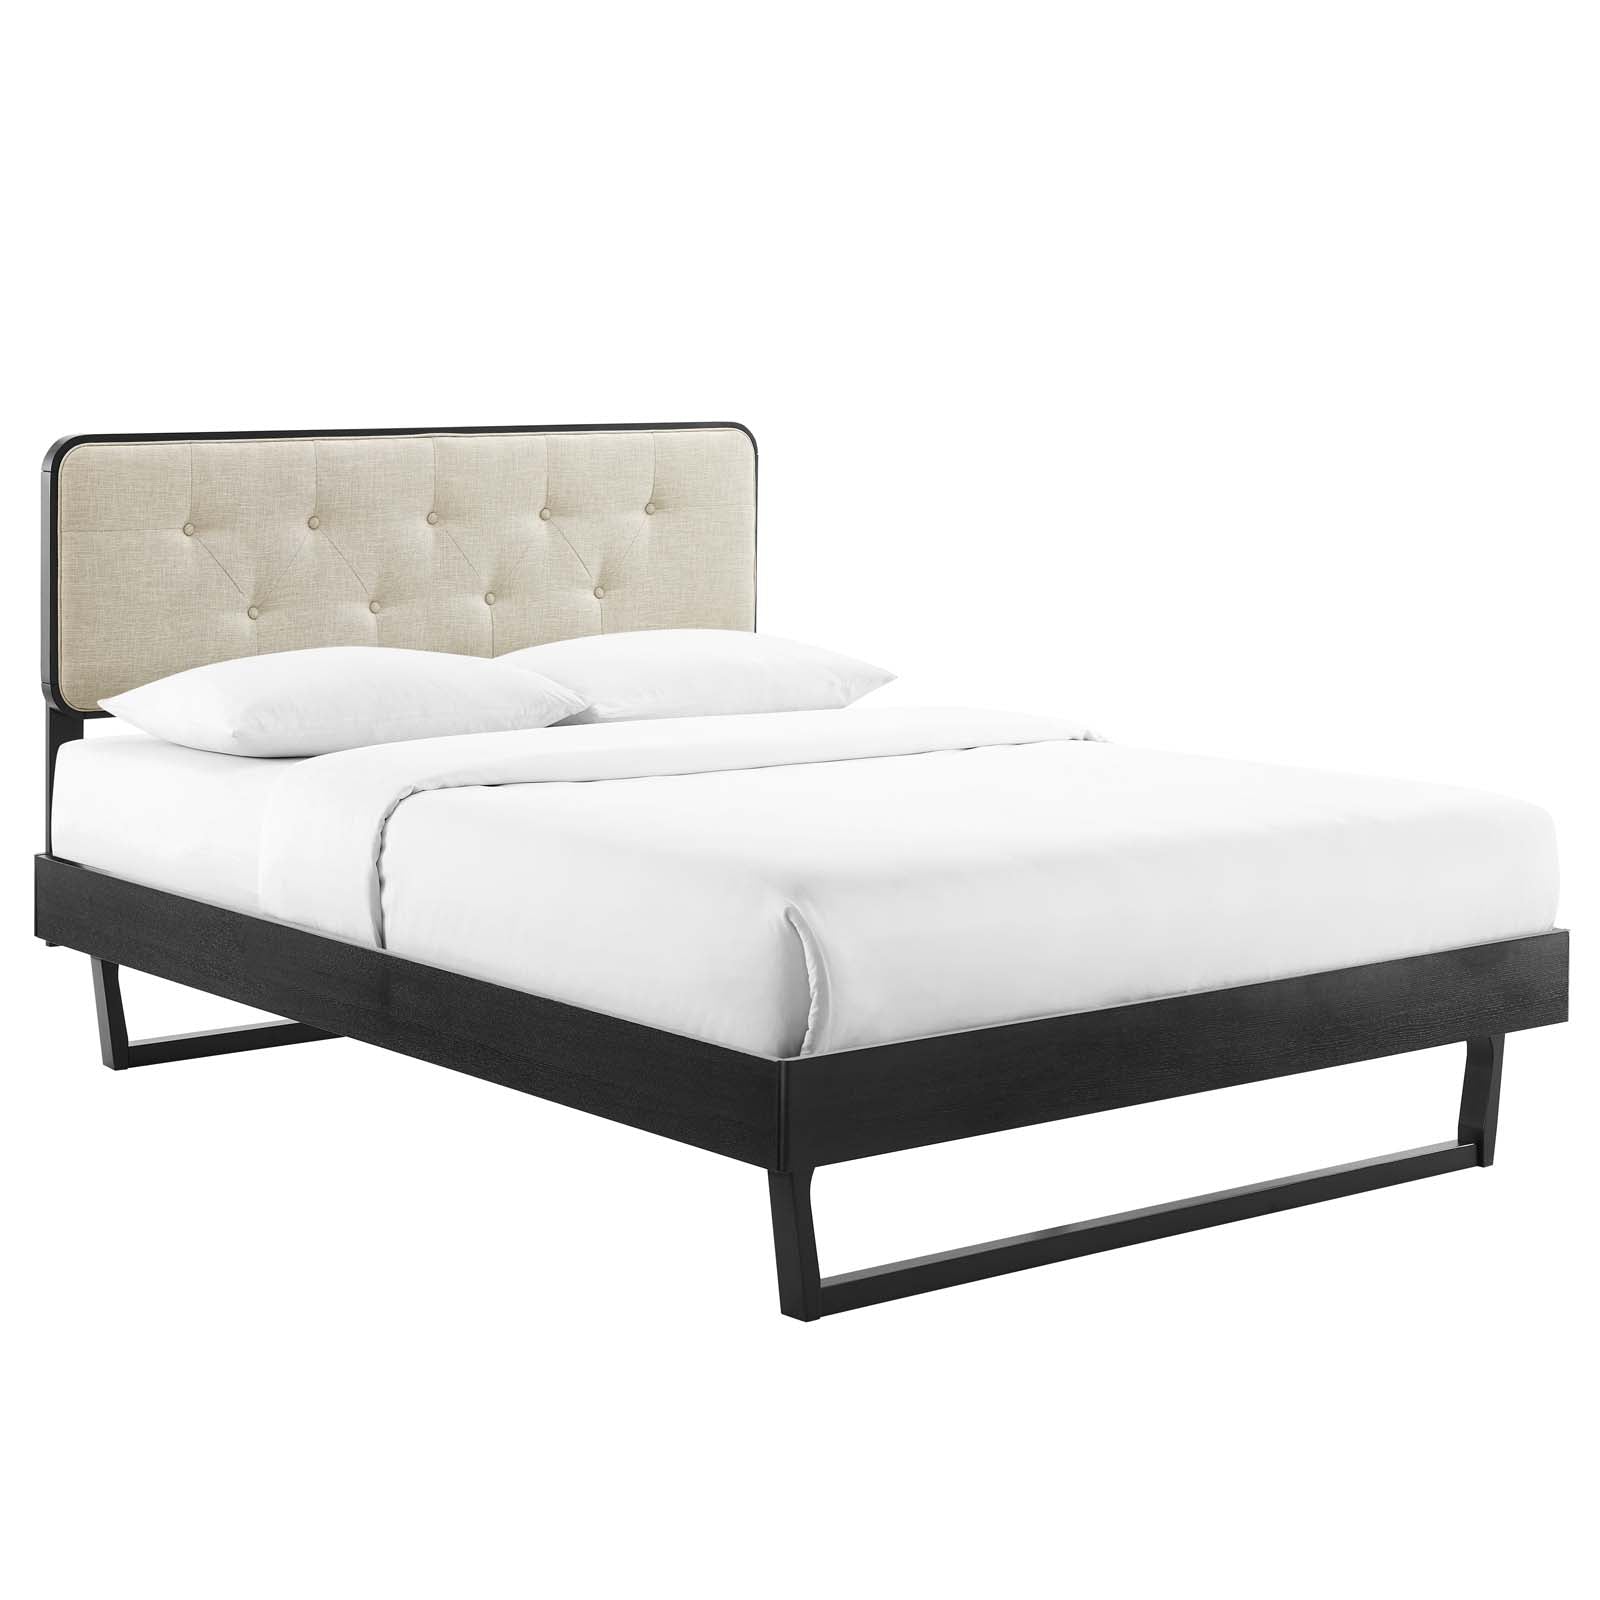 Modway Beds - Bridgette-King-Wood-Platform-Bed-With-Angular-Frame-Black-Beige